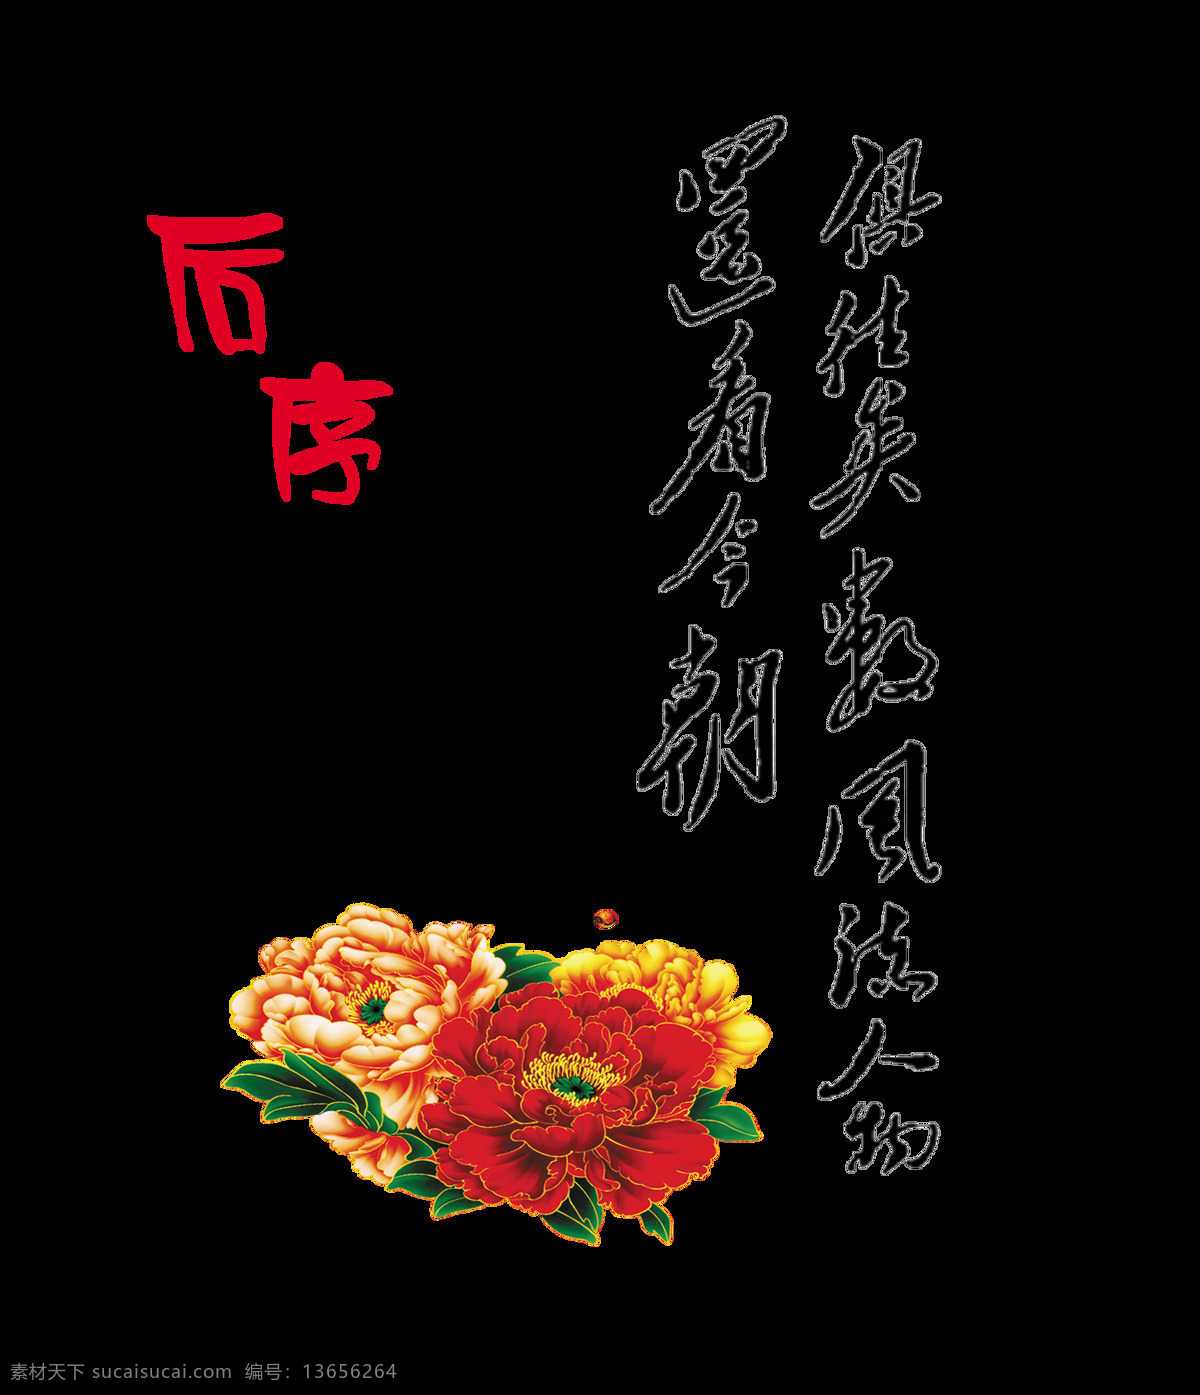 往昔 风流人物 还 看 今朝 艺术 字 中国 风 古风 中国风 古典 传统 文化 艺术字 元素 竖版 经典